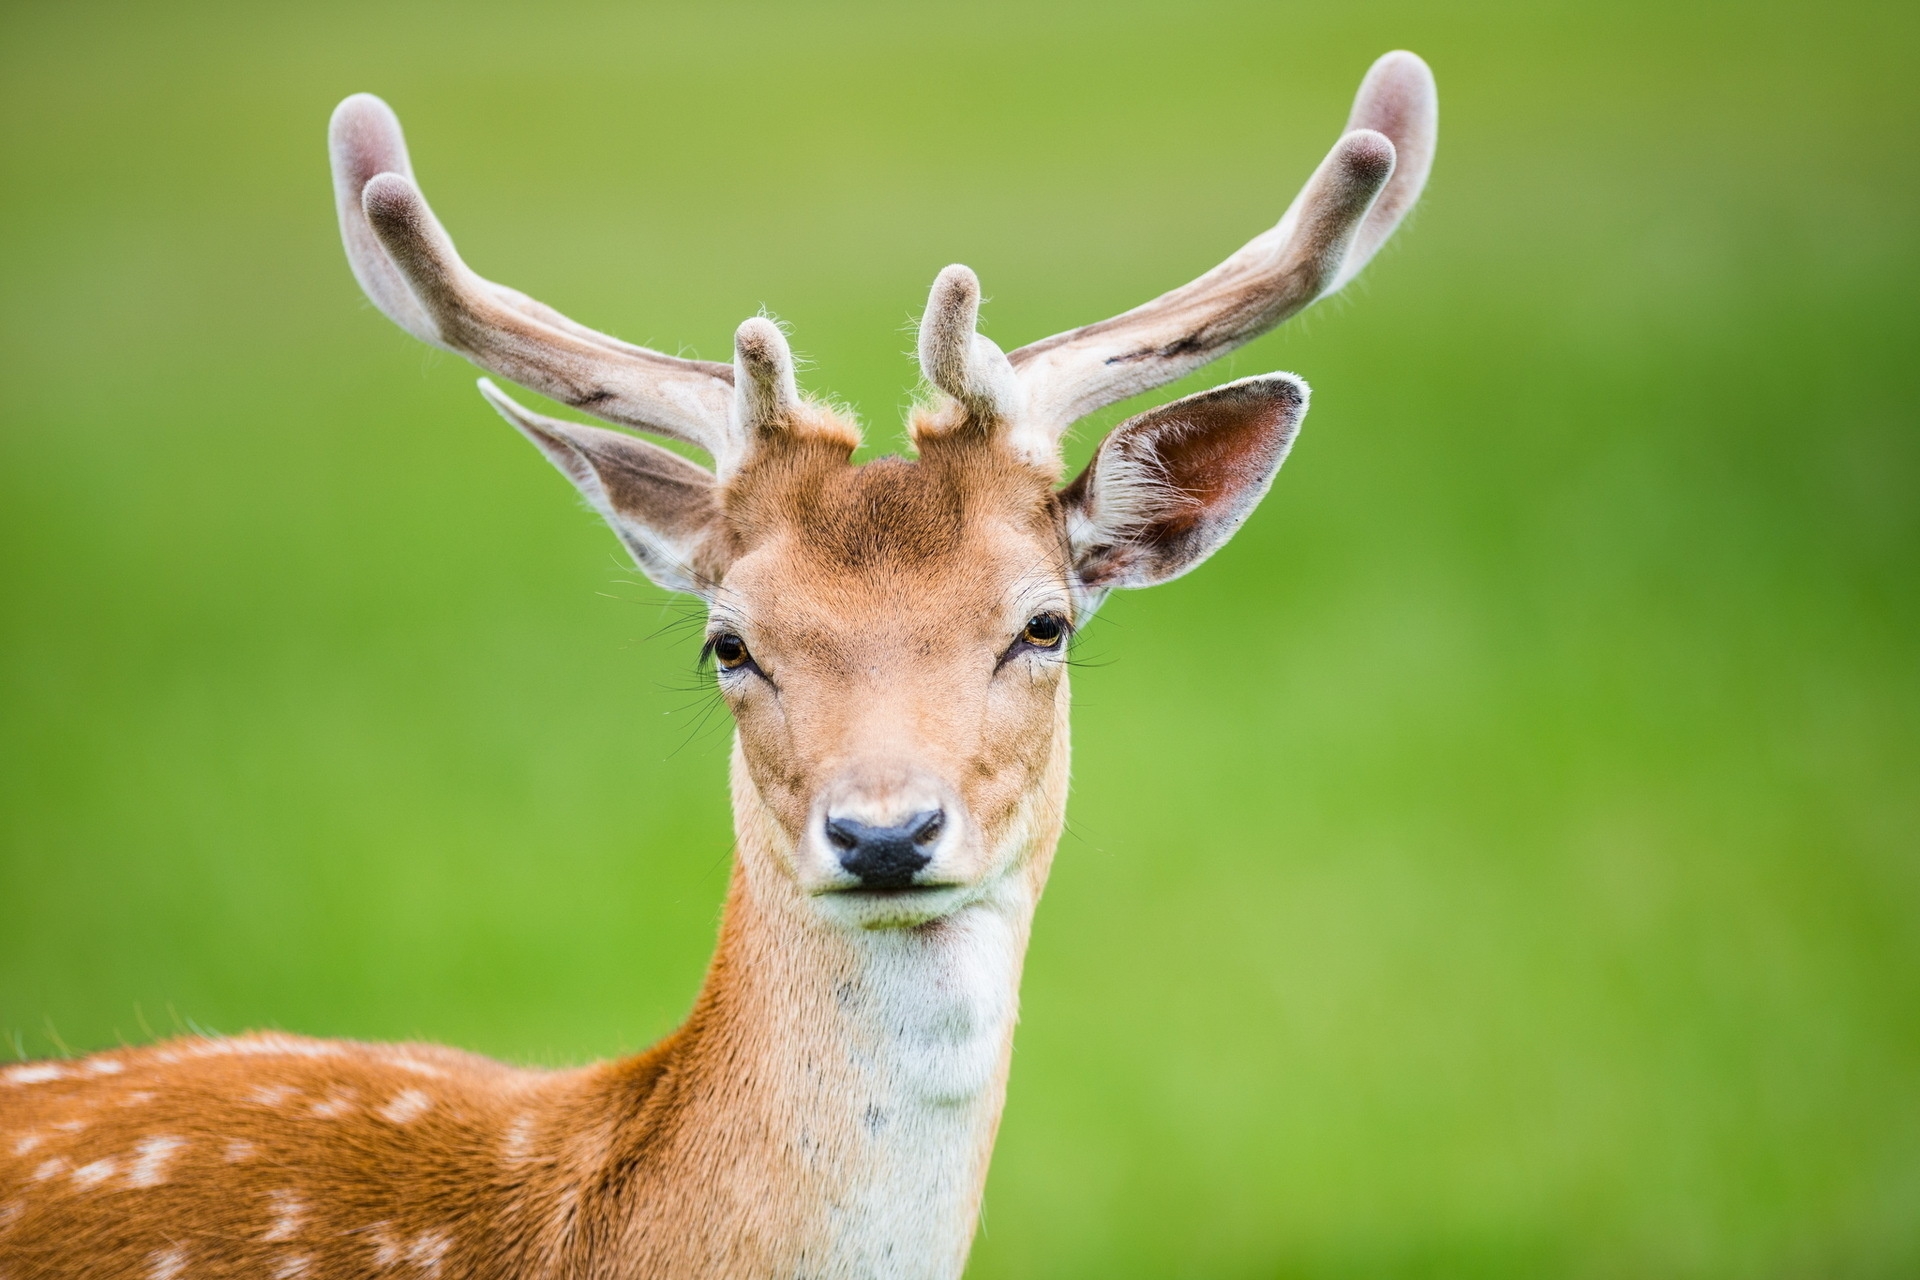 Wallpapers deer look animals on the desktop